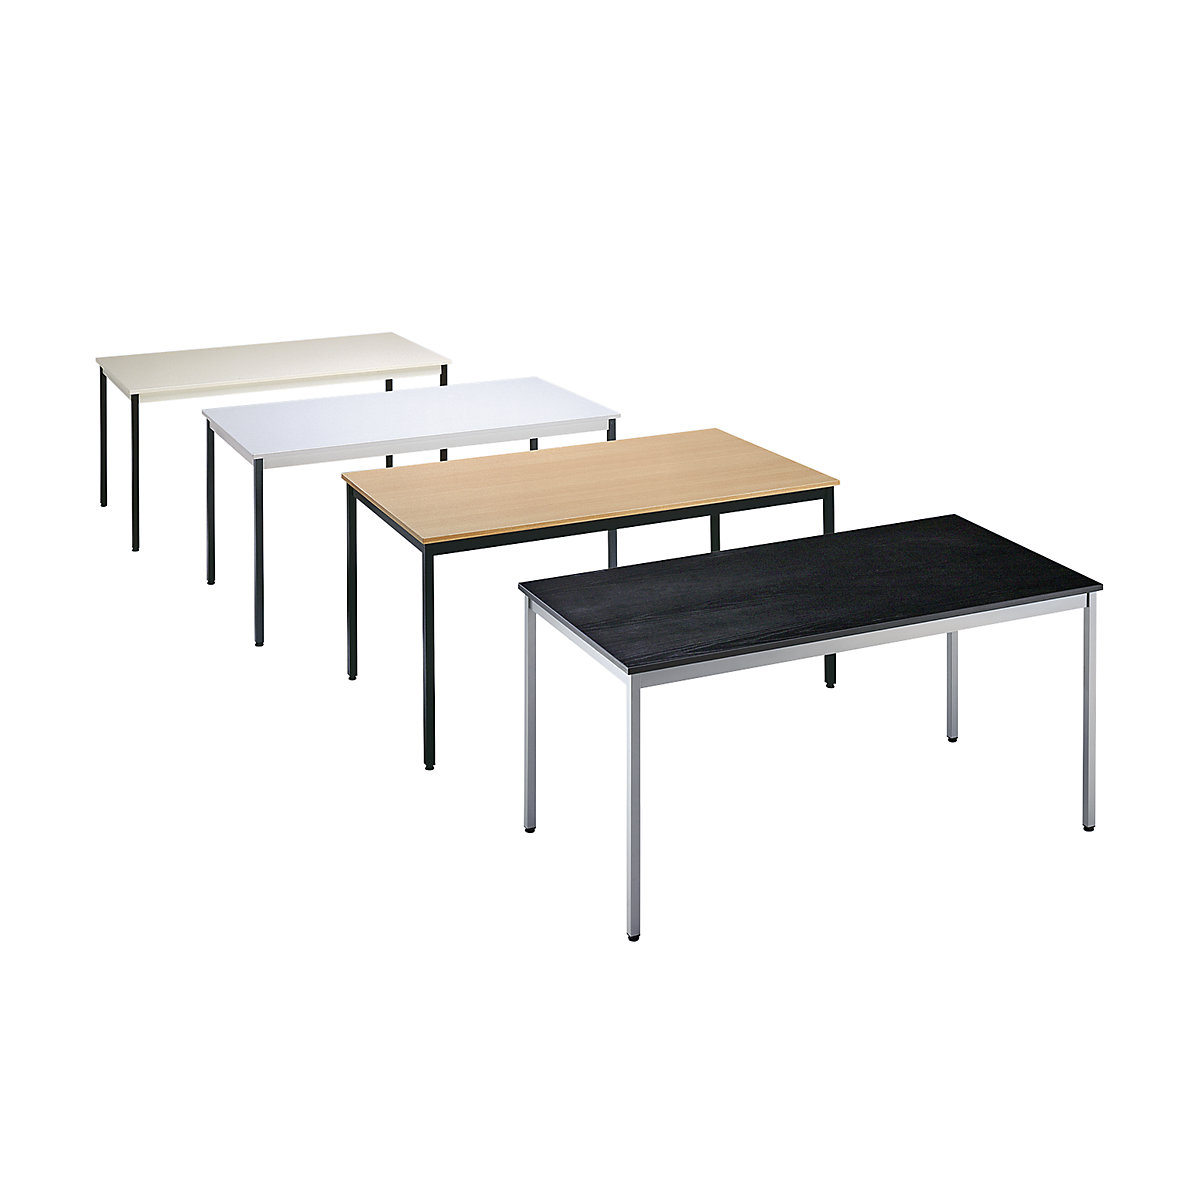 Table polyvalente – eurokraft basic, rectangulaire, l x h 1200 x 740 mm, profondeur 600 mm, plateau façon frêne noir, piétement aluminium-1